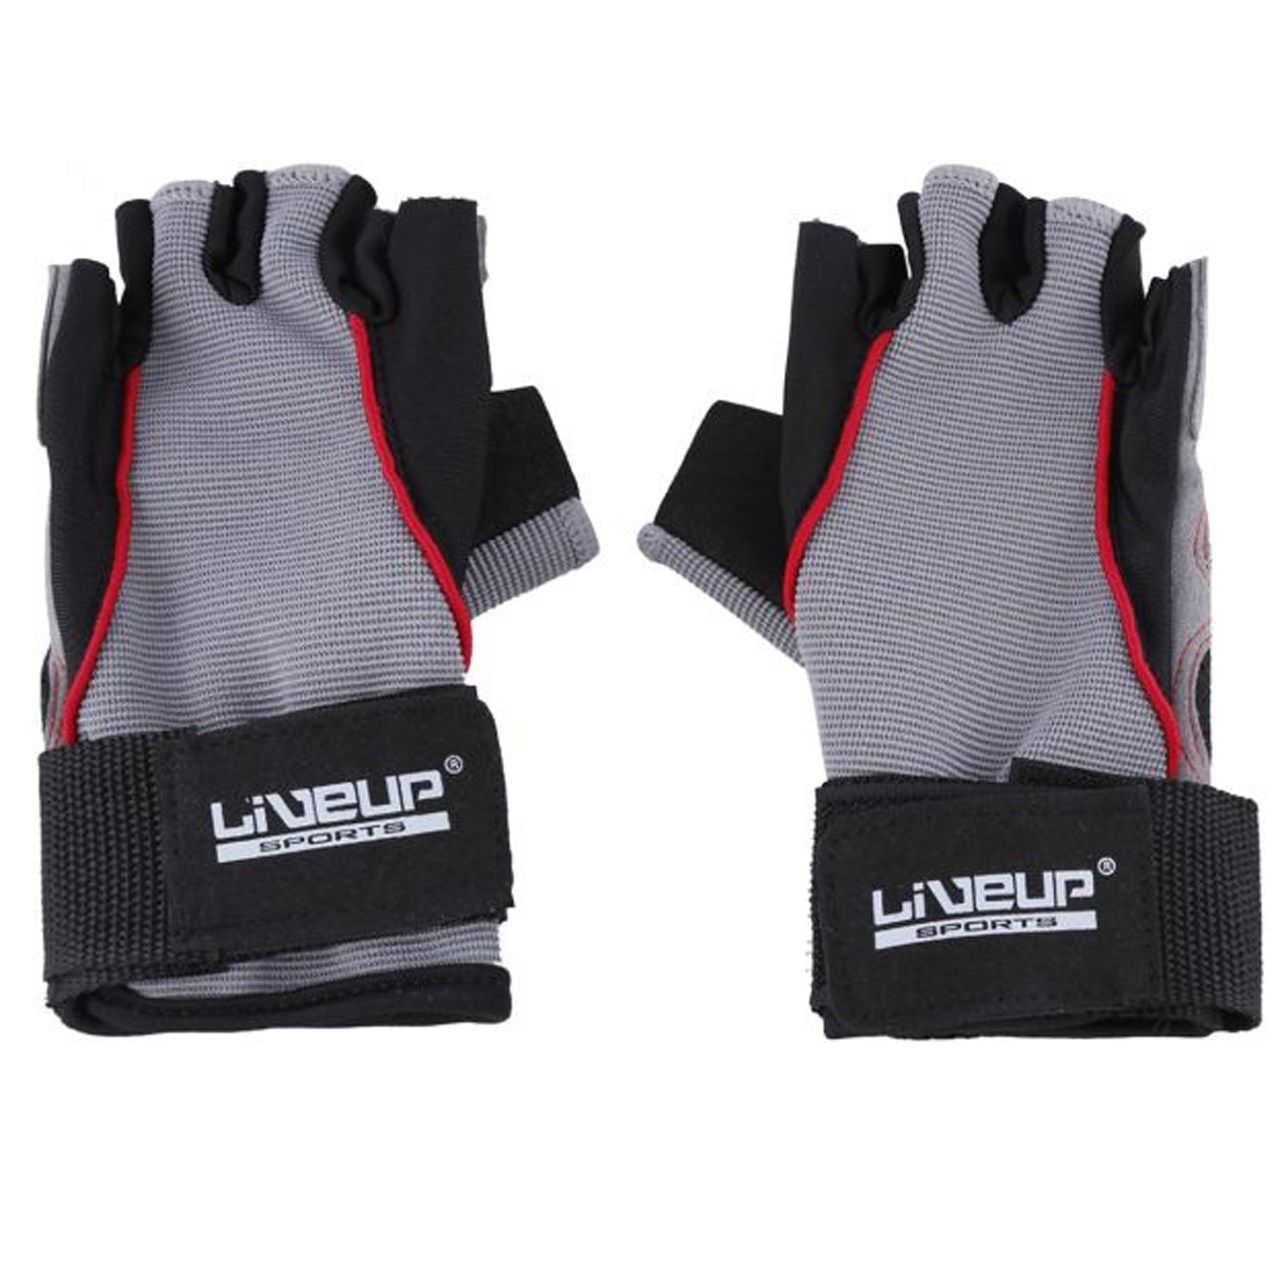 دستکش ورزشی لیوآپ مدل LS3071  -  - 1